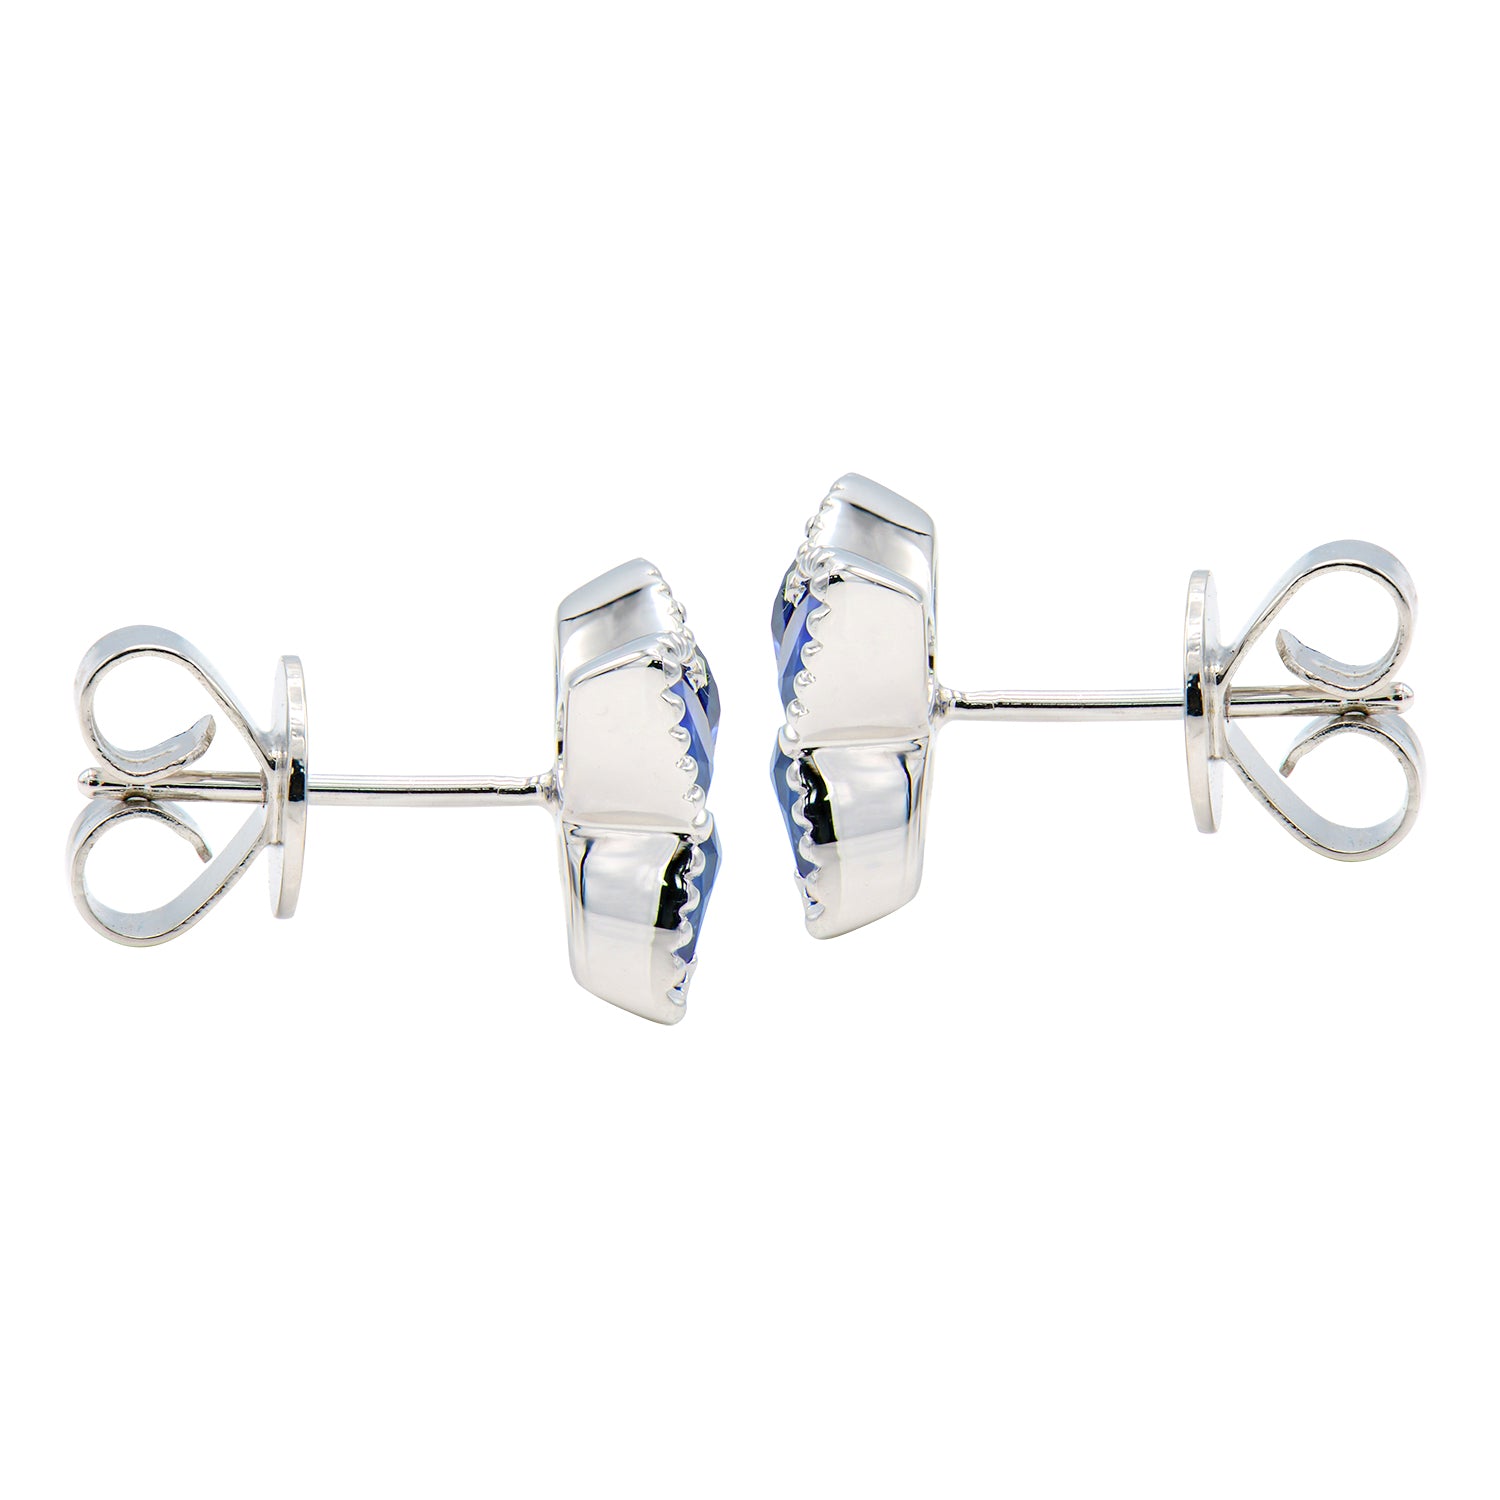 18KW Blue Sapphire Earrings